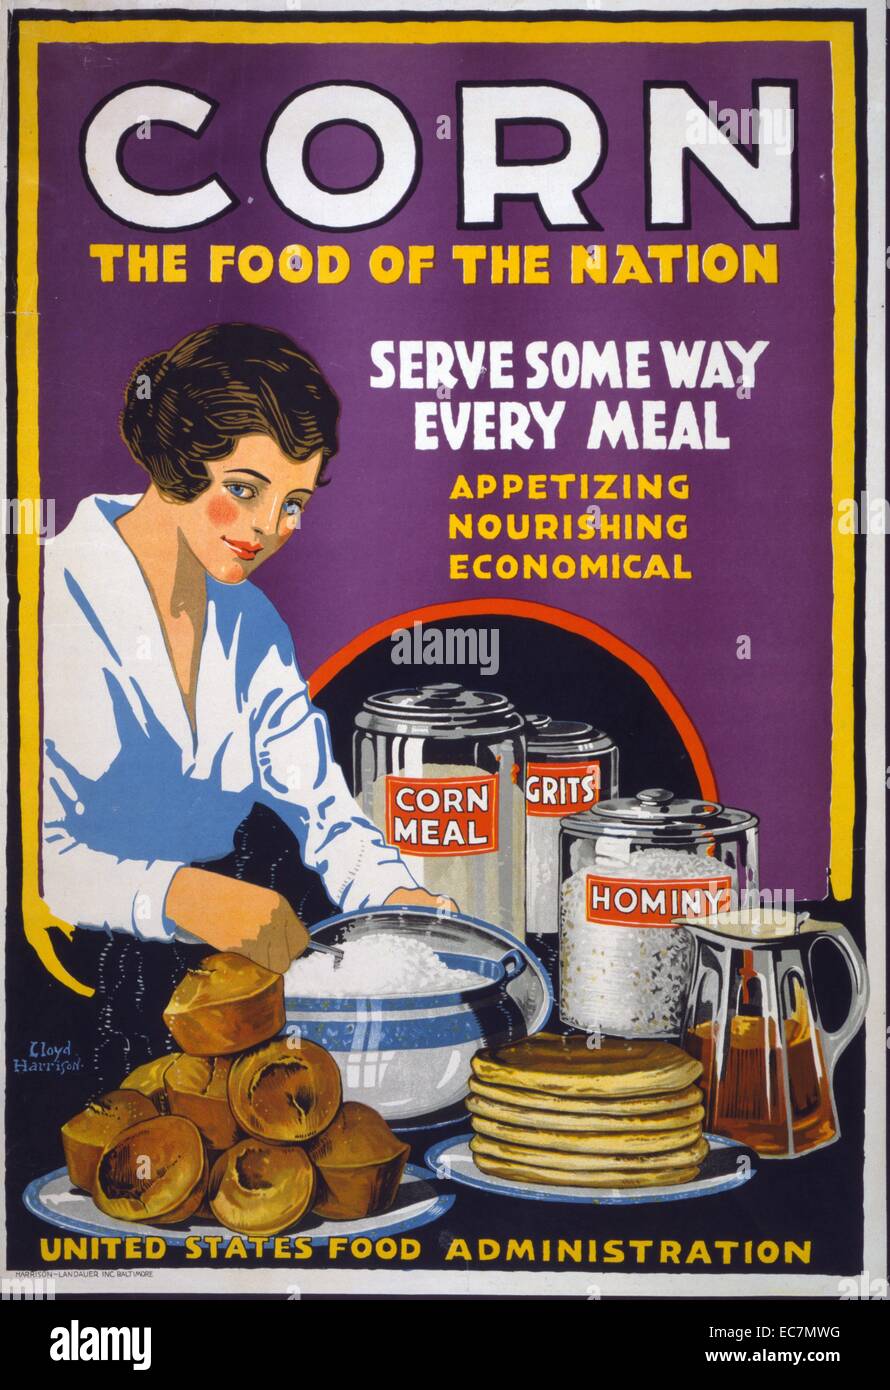 Plakat Förderung Amerikaner mehr Mais zu essen - das Essen der Nation dienen, einige Weise jede Mahlzeit - schmackhafte, nahrhafte, wirtschaftlich. Poster, auf dem eine Frau, Muffins, Pfannkuchen, und Grütze, mit Kanistern auf dem Tisch mit der Bezeichnung Maismehl, Maisgrütze und hominy. Stockfoto